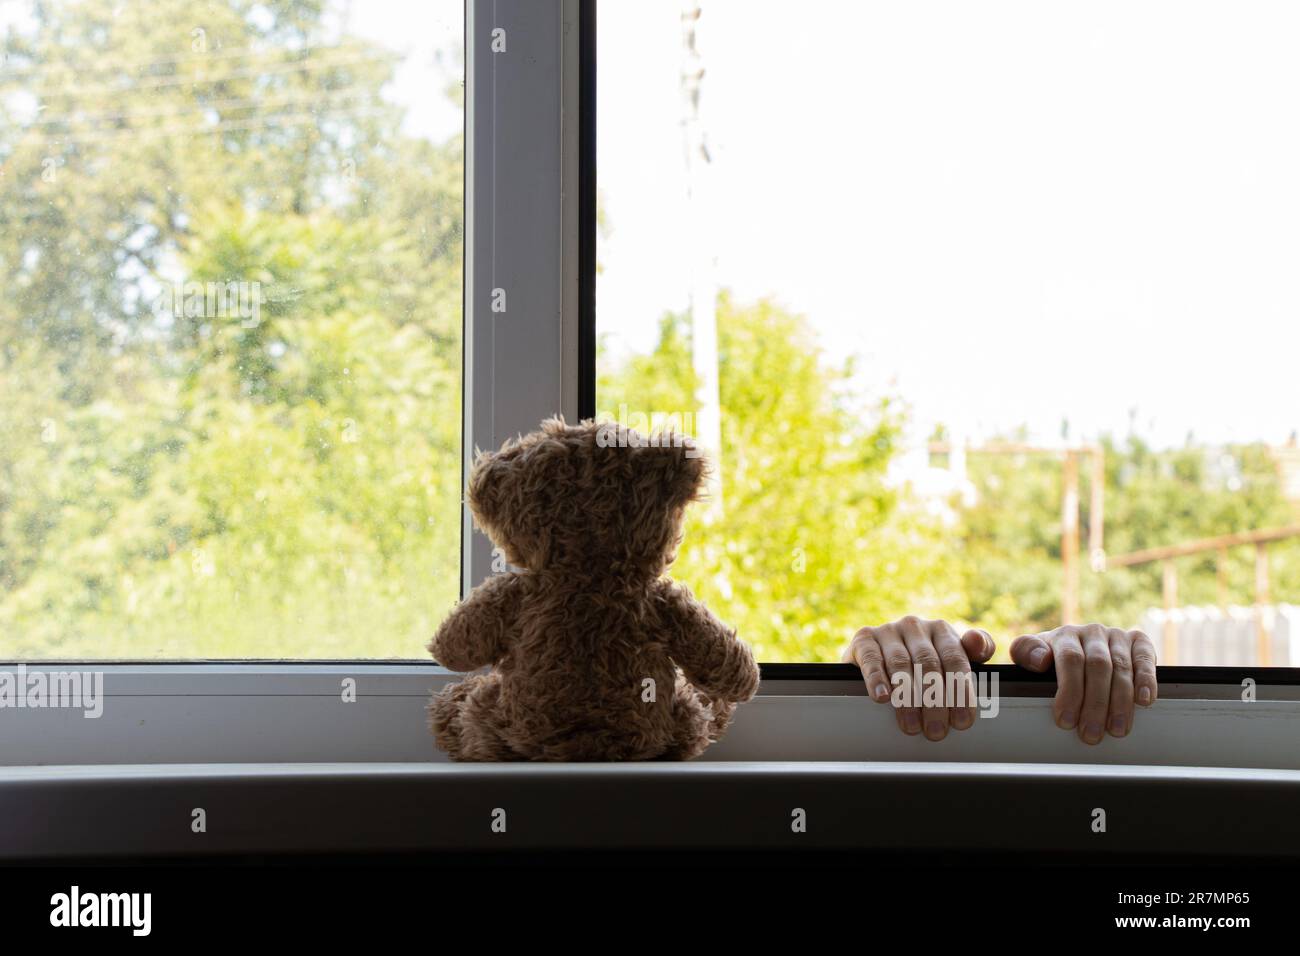 Le mani dei bambini si tengono sulla finestra dal lato della strada, e un orsacchiotto siede sulla finestra, suicidio, le mani fuori dalla finestra, suicidio Foto Stock